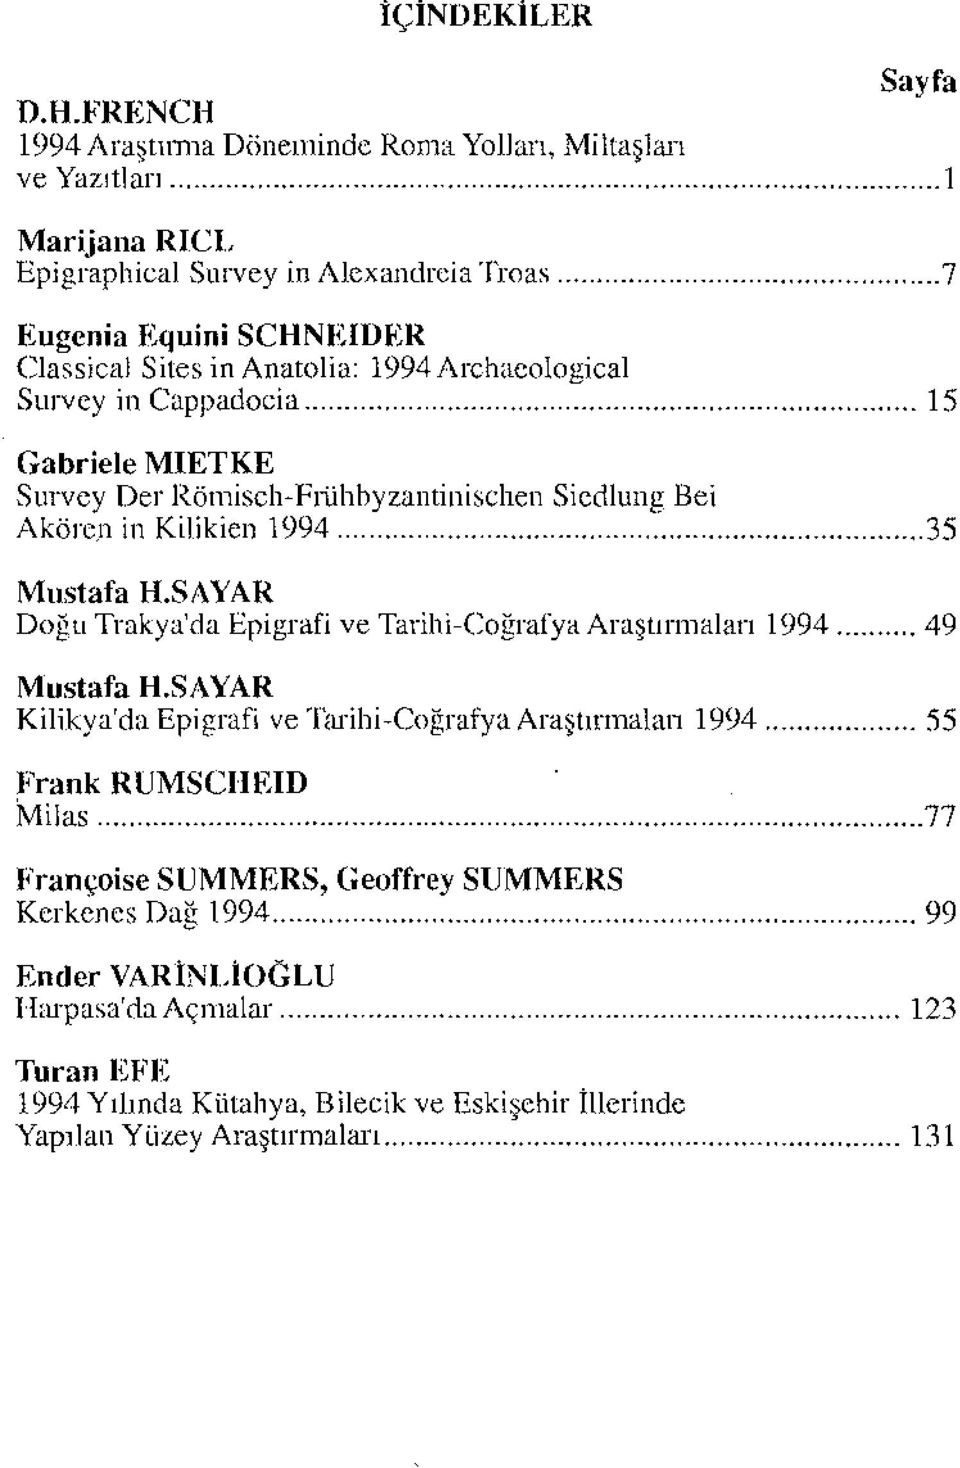 Anatolia: 1994Archaeological Survey in Cappadocia 15 Gabriele MIETKE Survey Der Römisch-Frühbyzantinischen Siedlung Bei Akören in Kilikien 1994 35 Mustafa H.